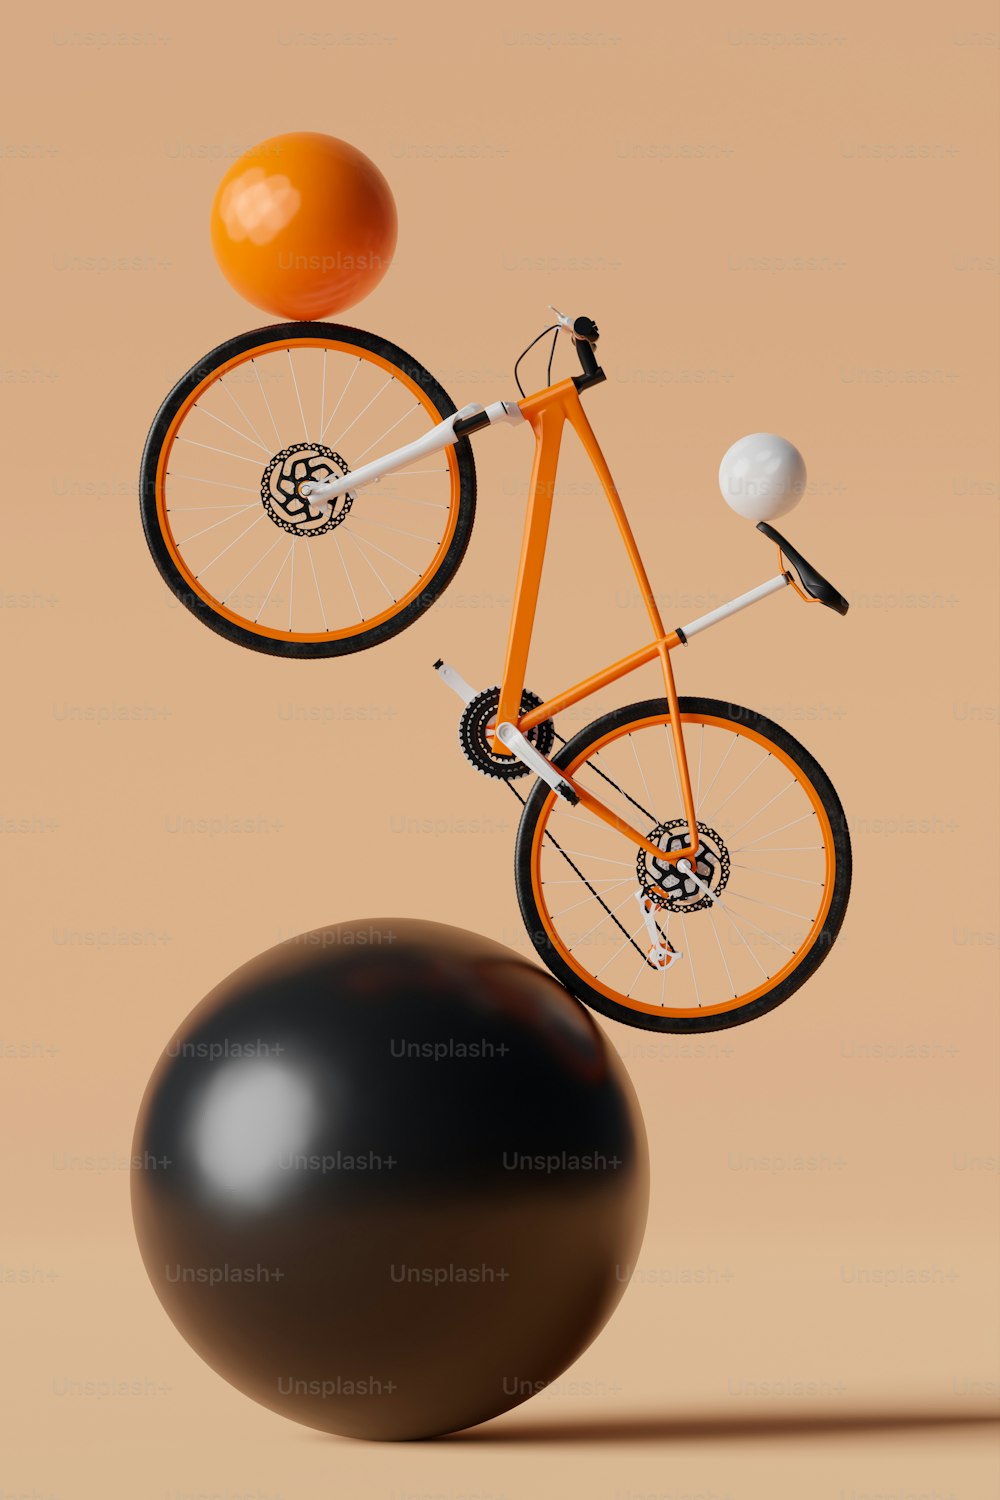 uma bicicleta laranja equilibrando em uma bola preta